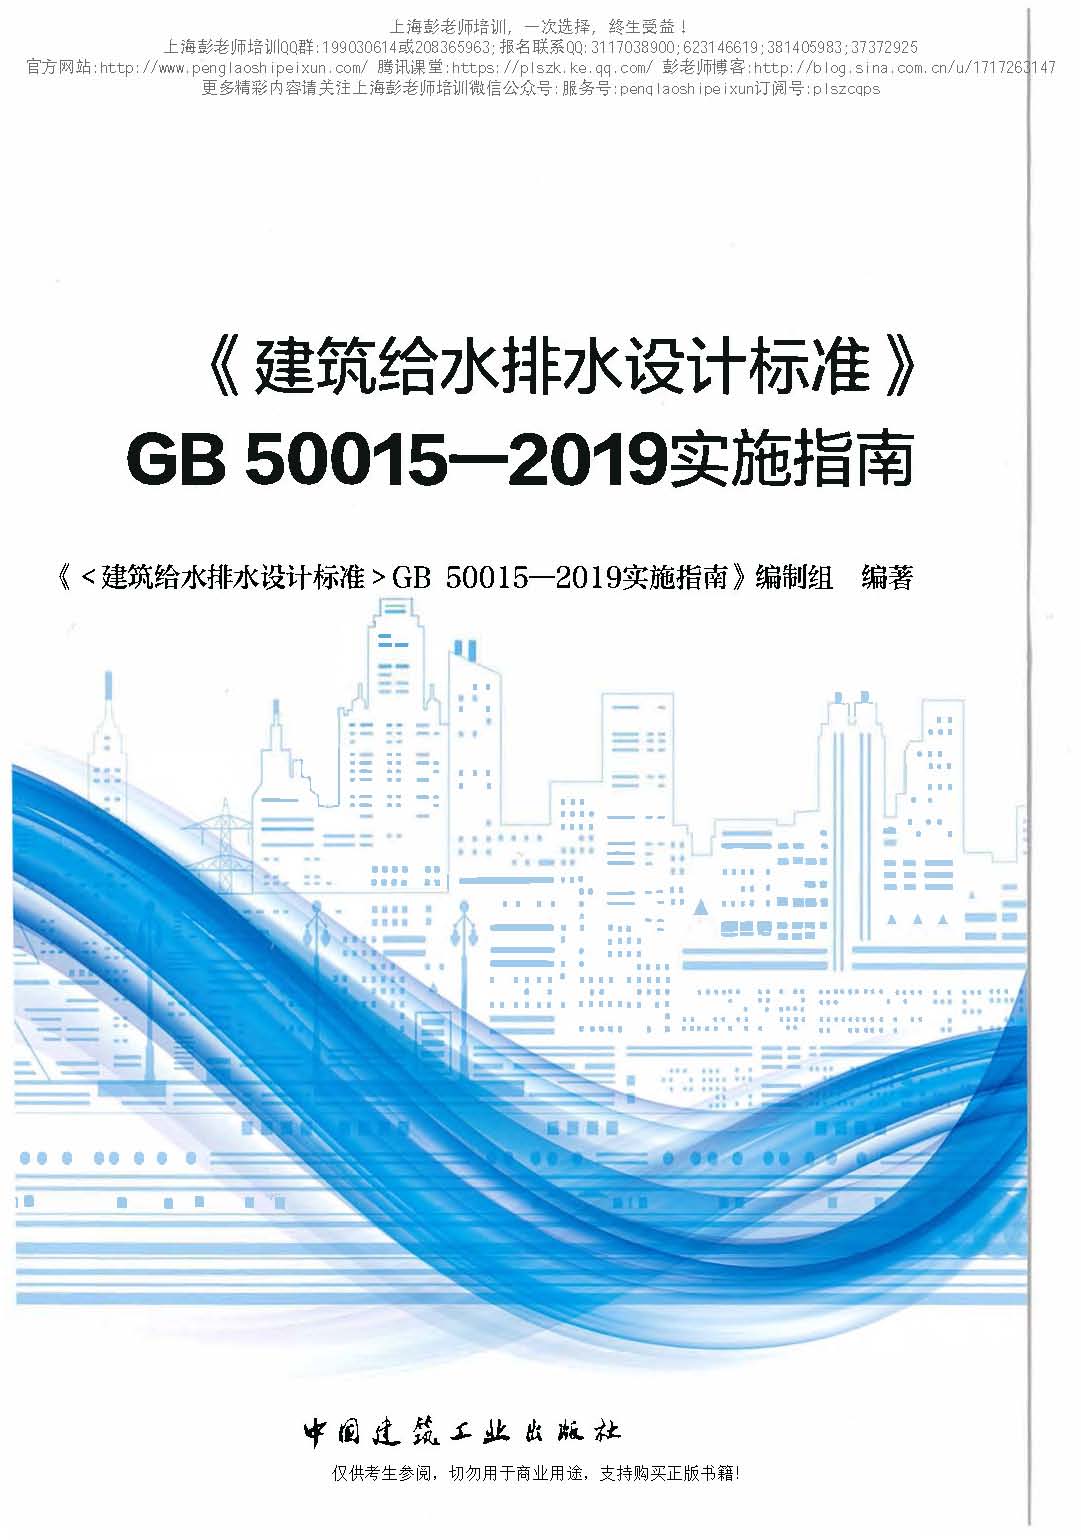 建筑给水排水设计标准GB50015-2019实施指南（OCR版）上海彭老师培训_页面_001.jpg.jpg